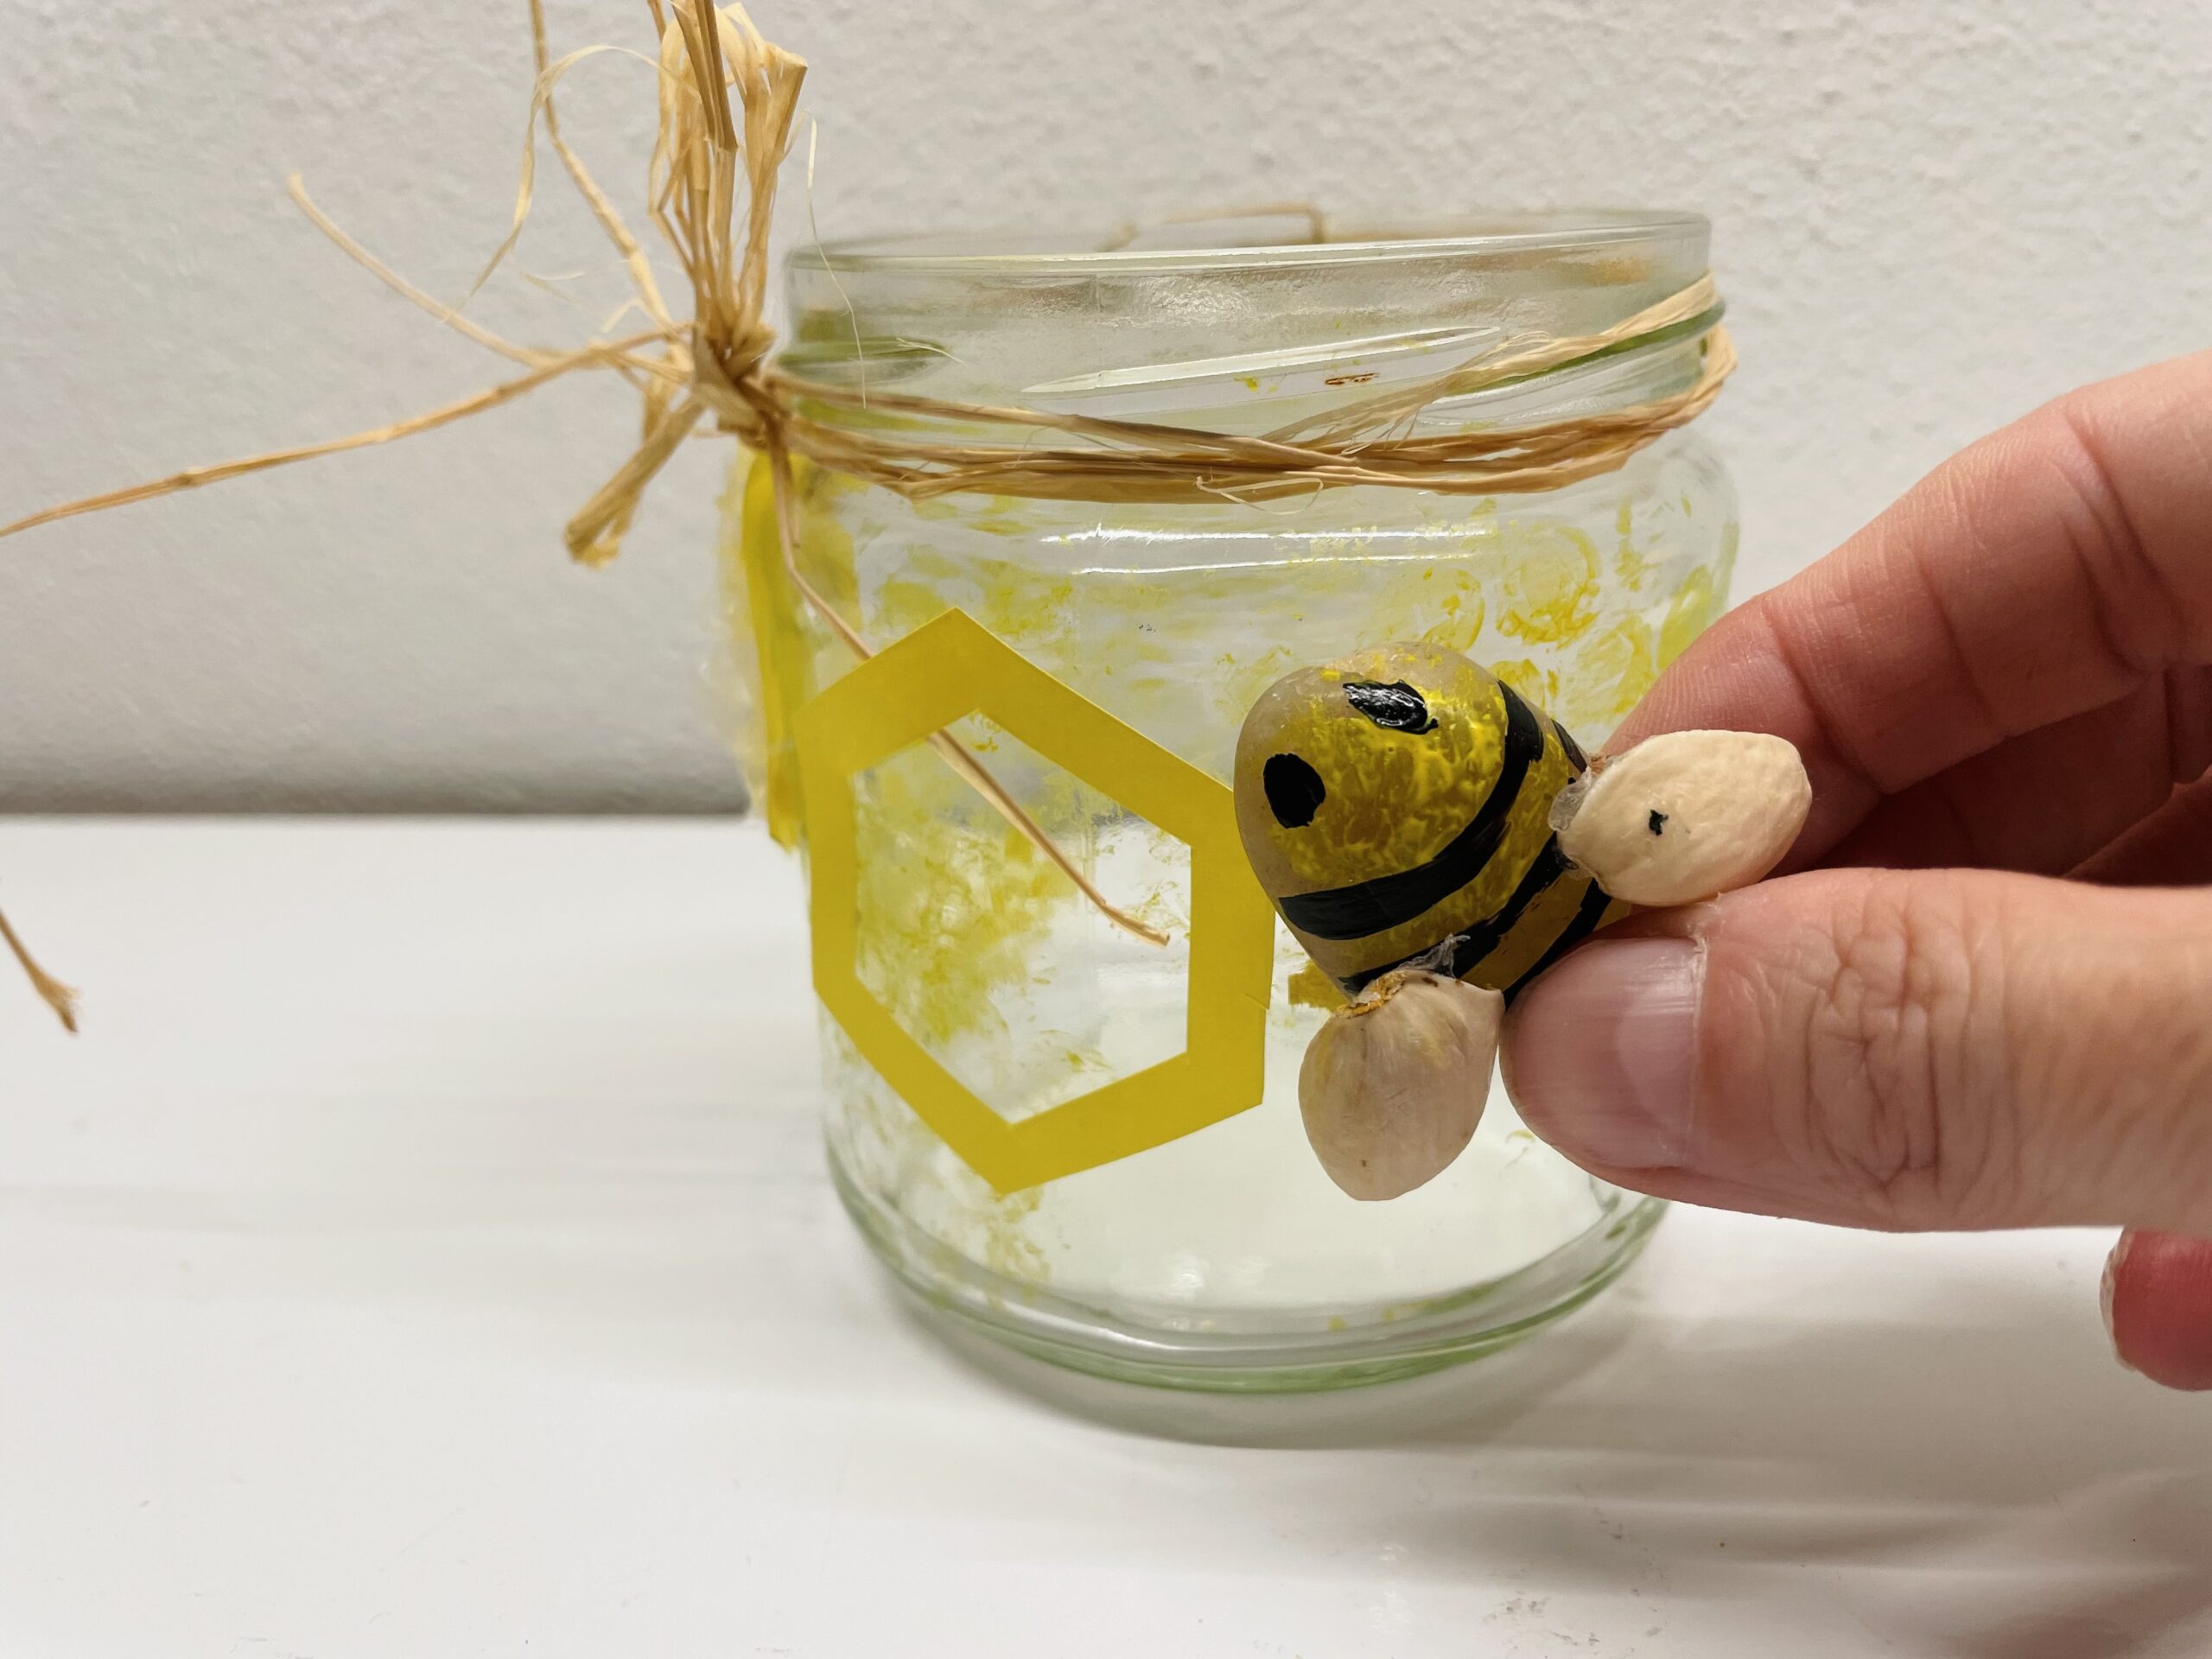 Bild zum Schritt 20 für das Bastel- und DIY-Abenteuer für Kinder: 'Zuletzt klebt ihr die Bienen darauf. Hierzu müsst ihr vielleicht...'